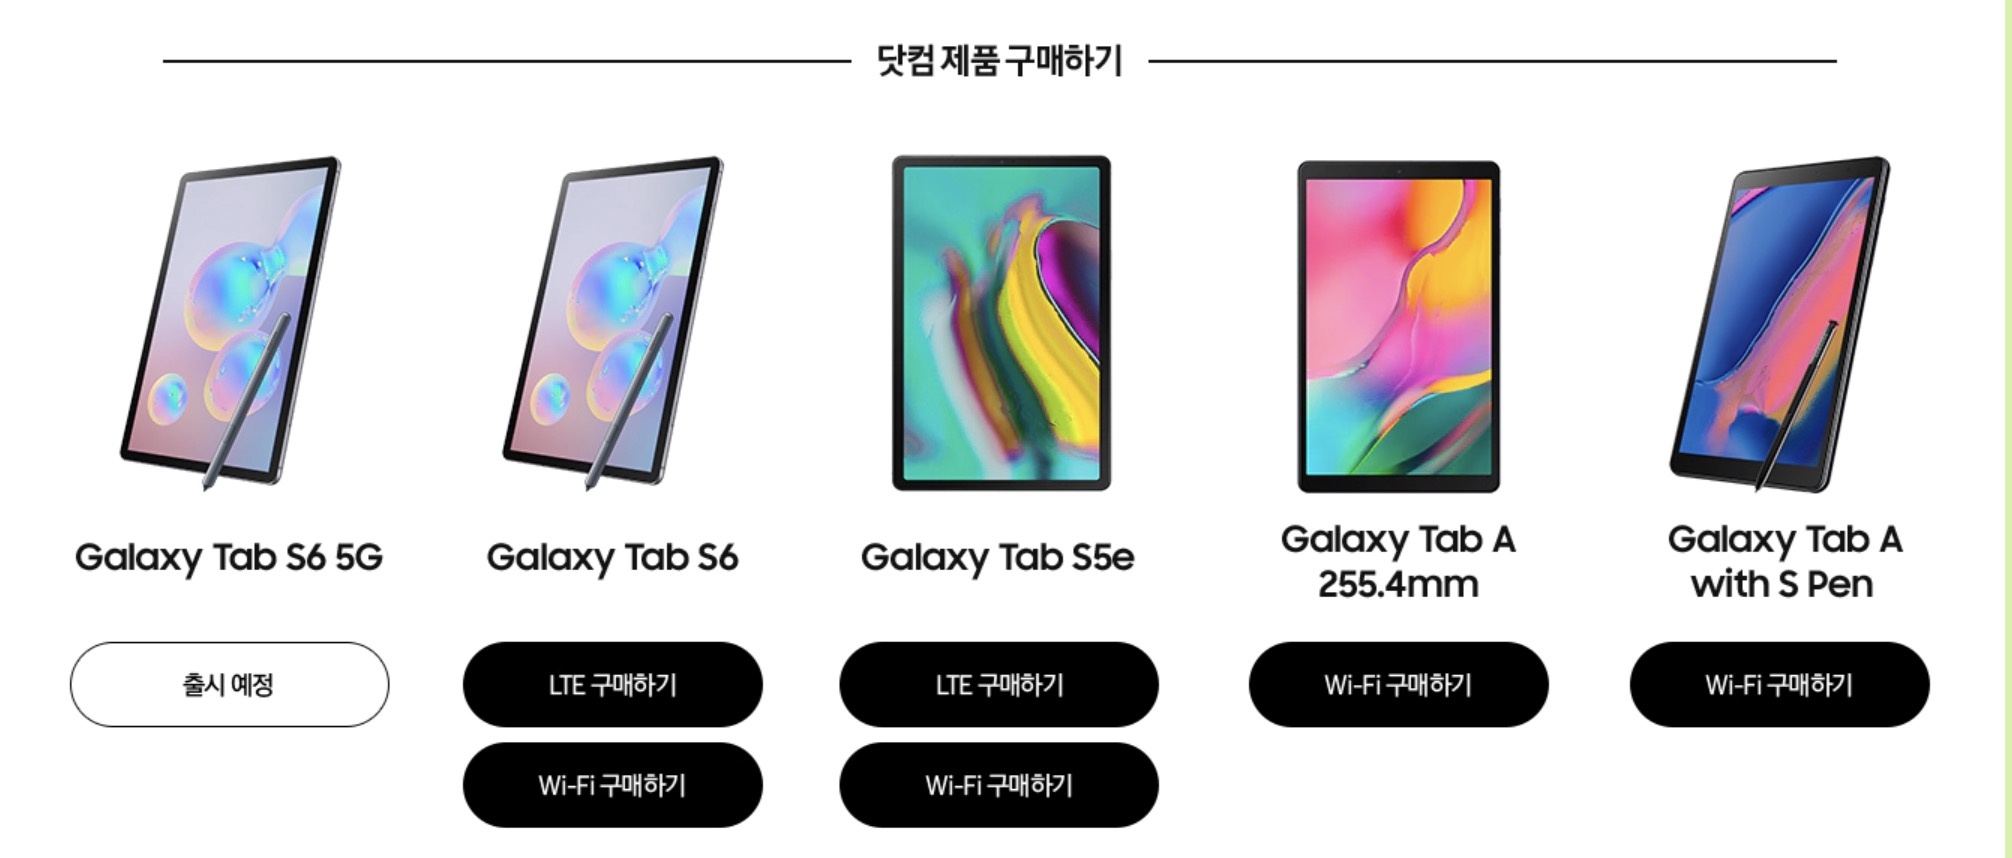 Galaxy Tab S6 5G